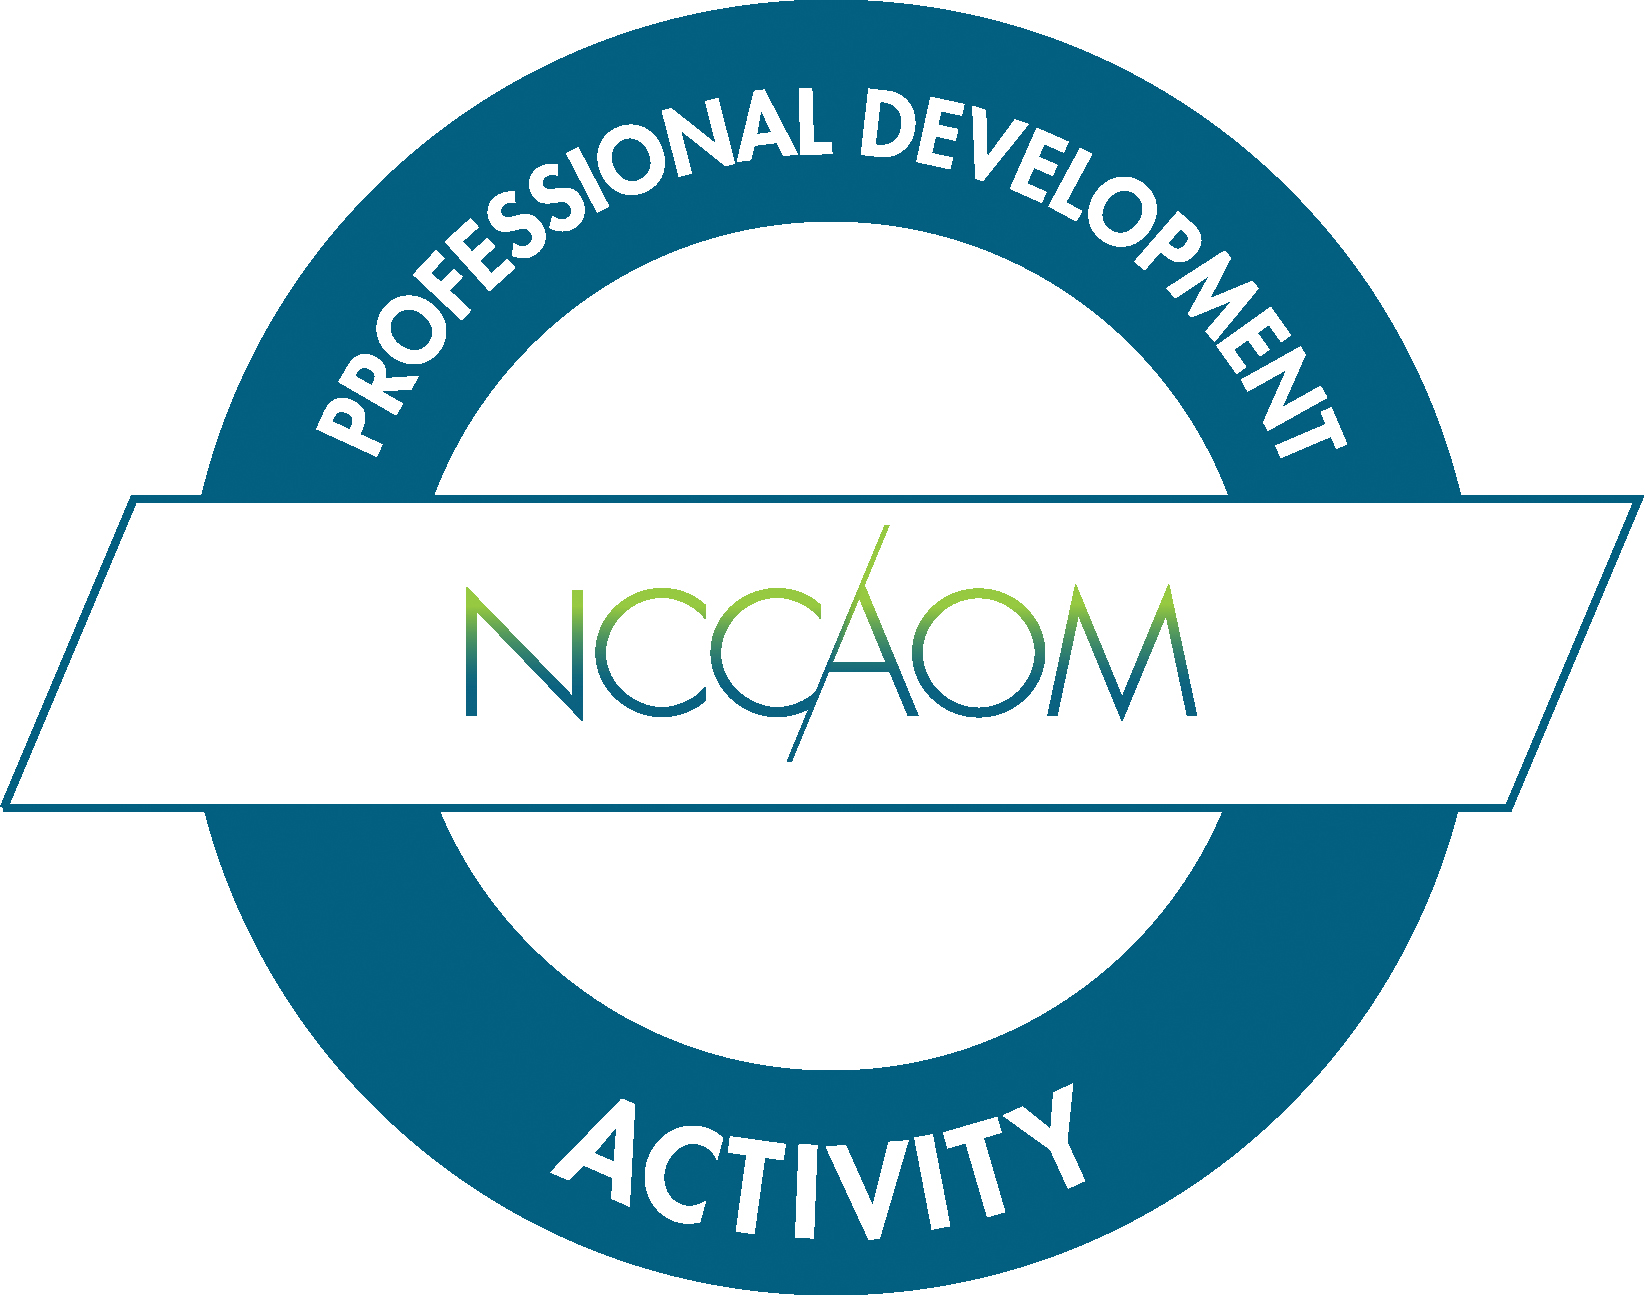 NCCAOM logo